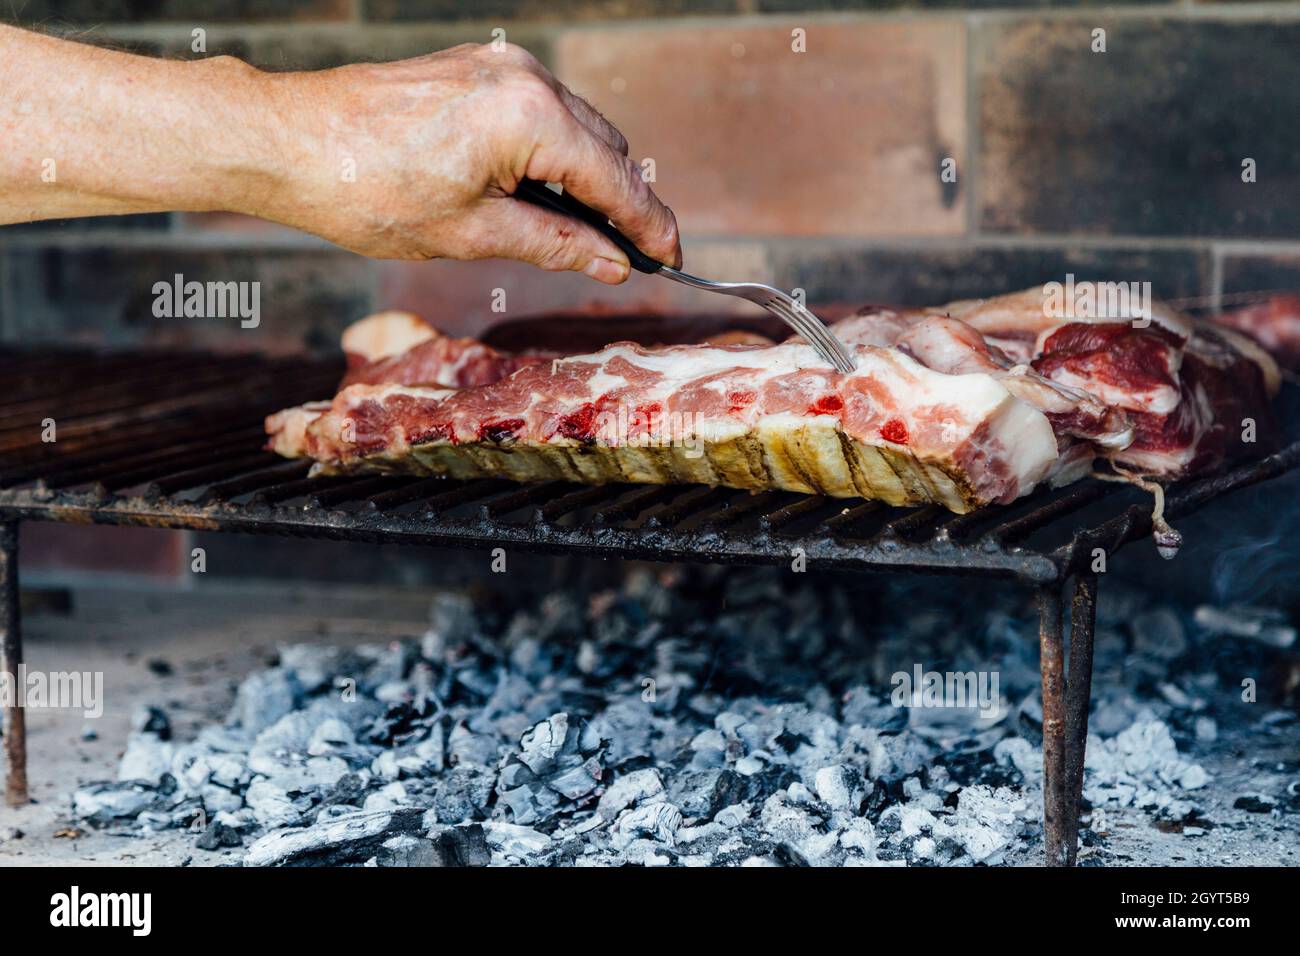 La main d'un homme mature qui fait un barbecue.Il prodding la viande avec une fourchette. Banque D'Images